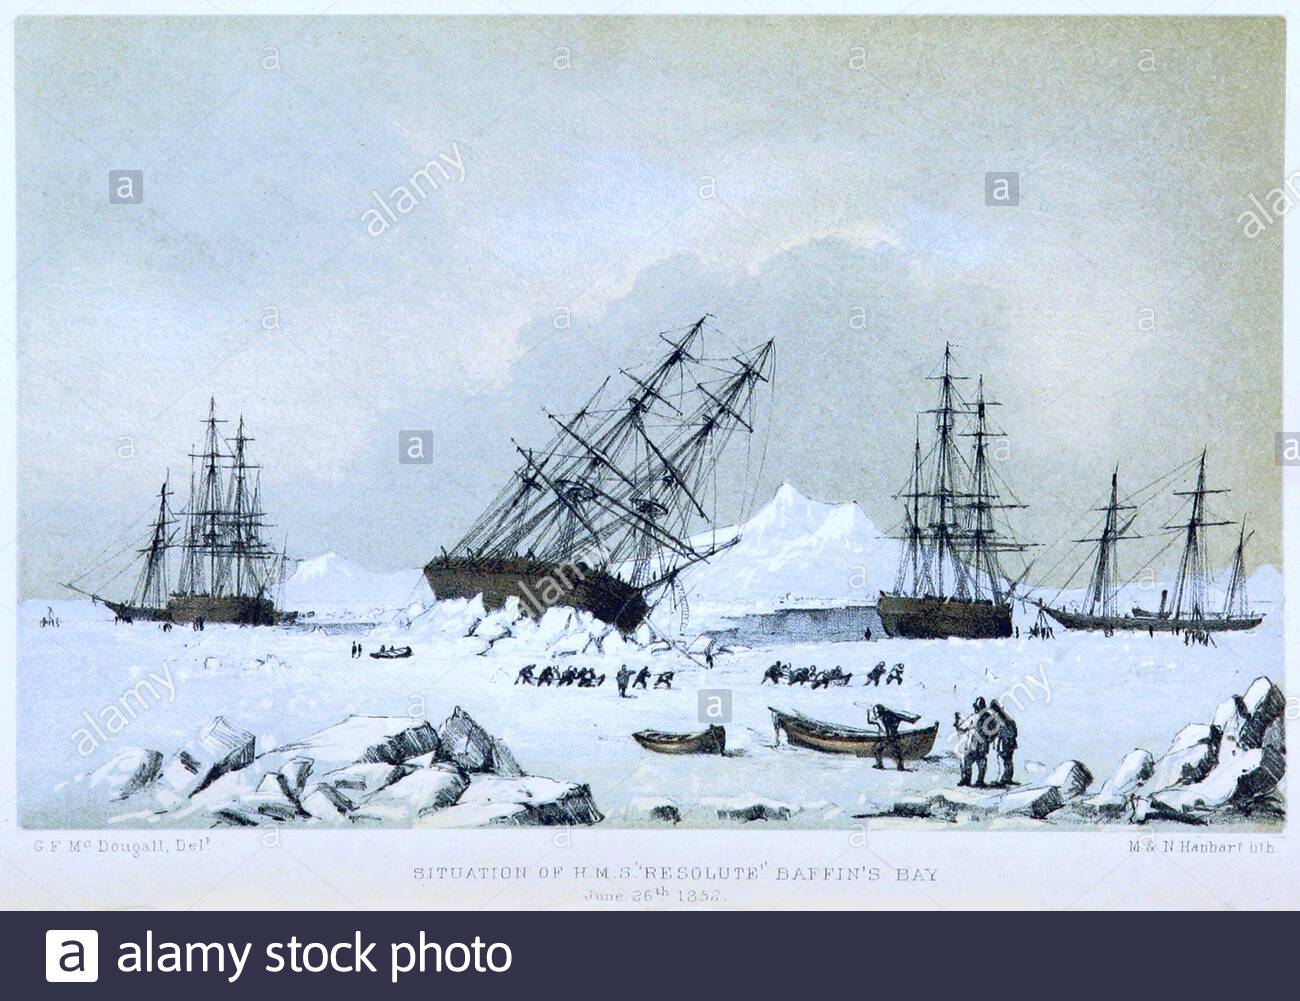 Auf der Suche nach dem britischen Offizier der Royal Navy und dem Polarforscher Captain Sir John Franklin, Situation von HMS Resolute und HMS Intrepid in Baffin Bay, Vintage Illustration von 1857 Stockfoto